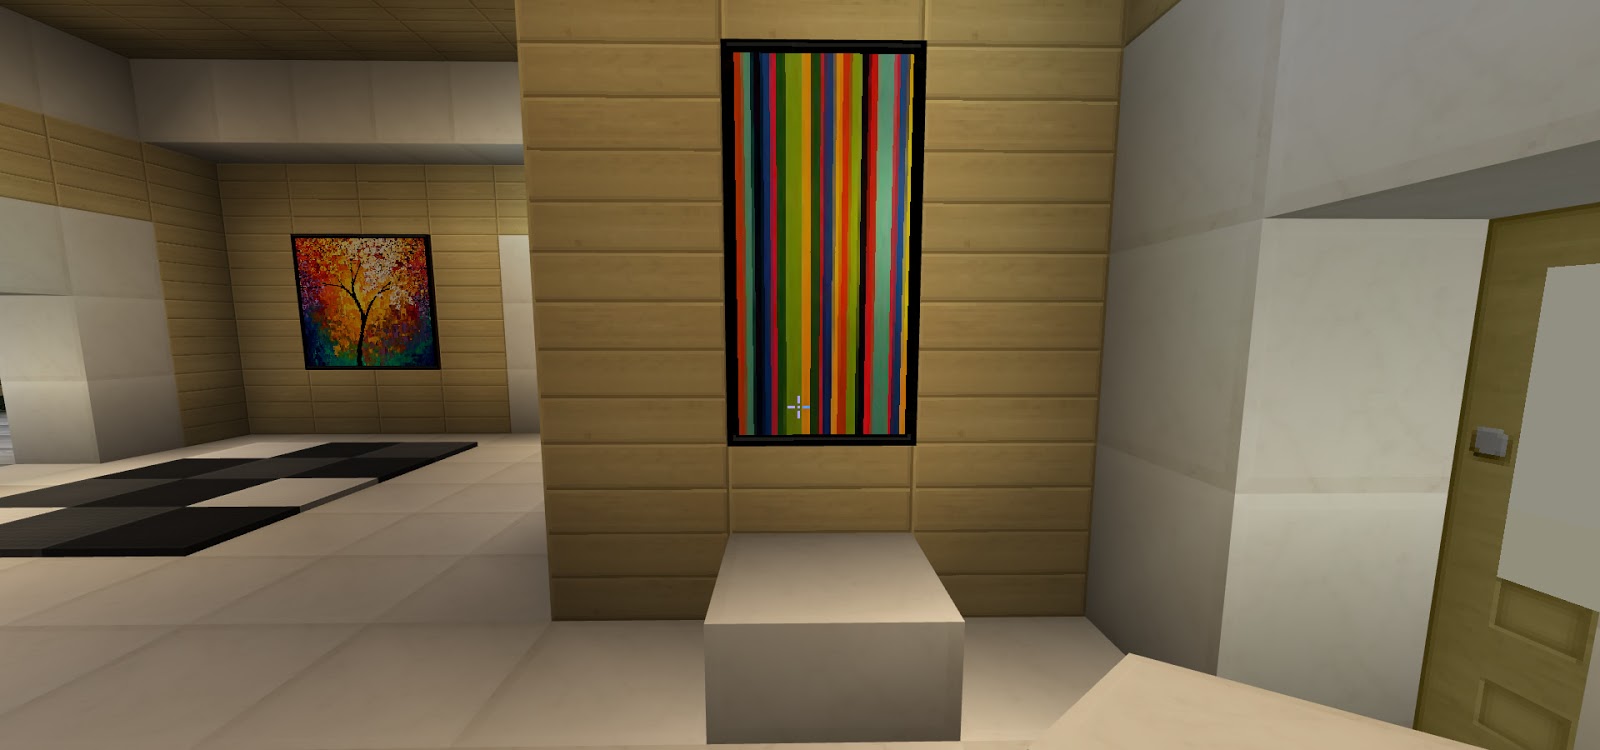 Amazing Minecraft Interior Decorating Ideas CFM FuelGaming